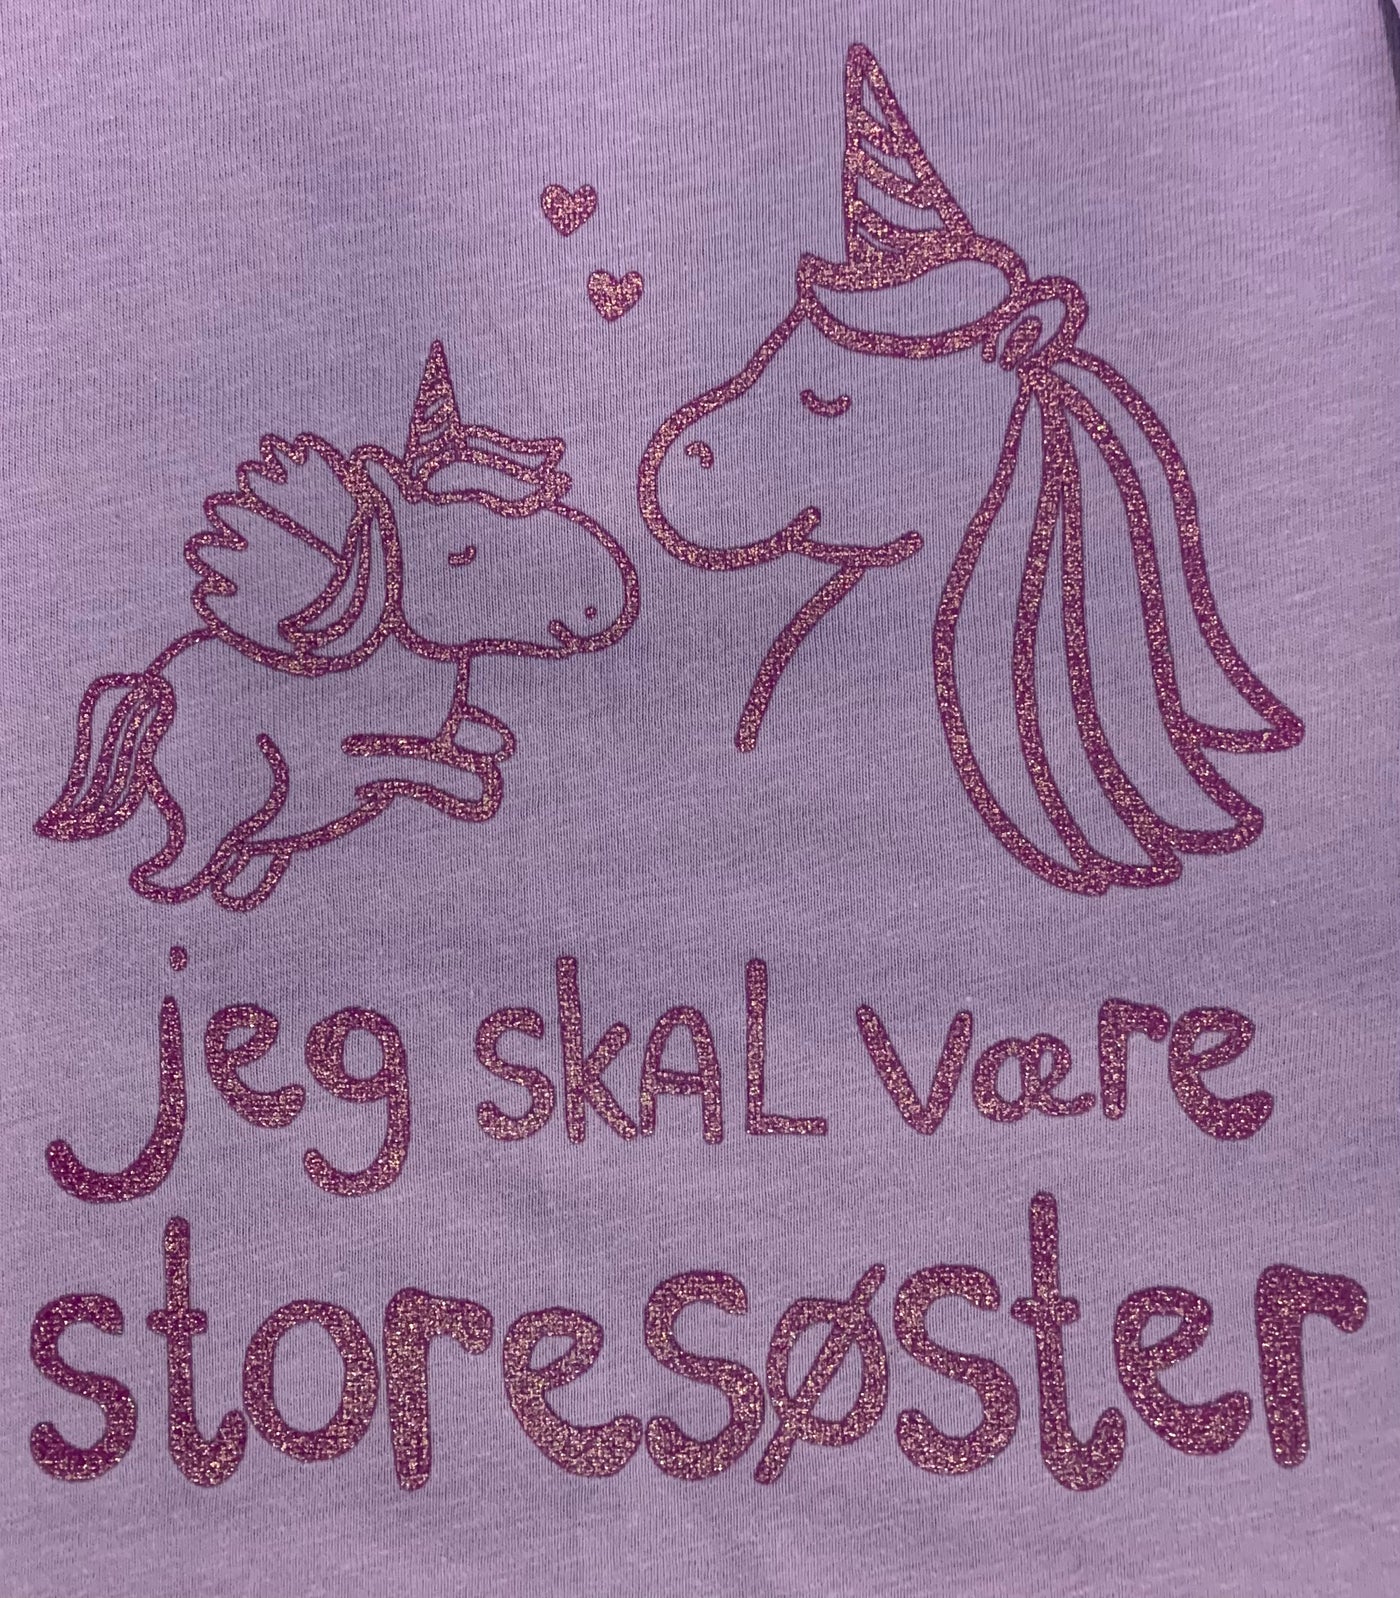 Jeg Skal Være Storesøster T-shirt S/S Enhjørning Lavender Med Lilla Krystalina Tryk